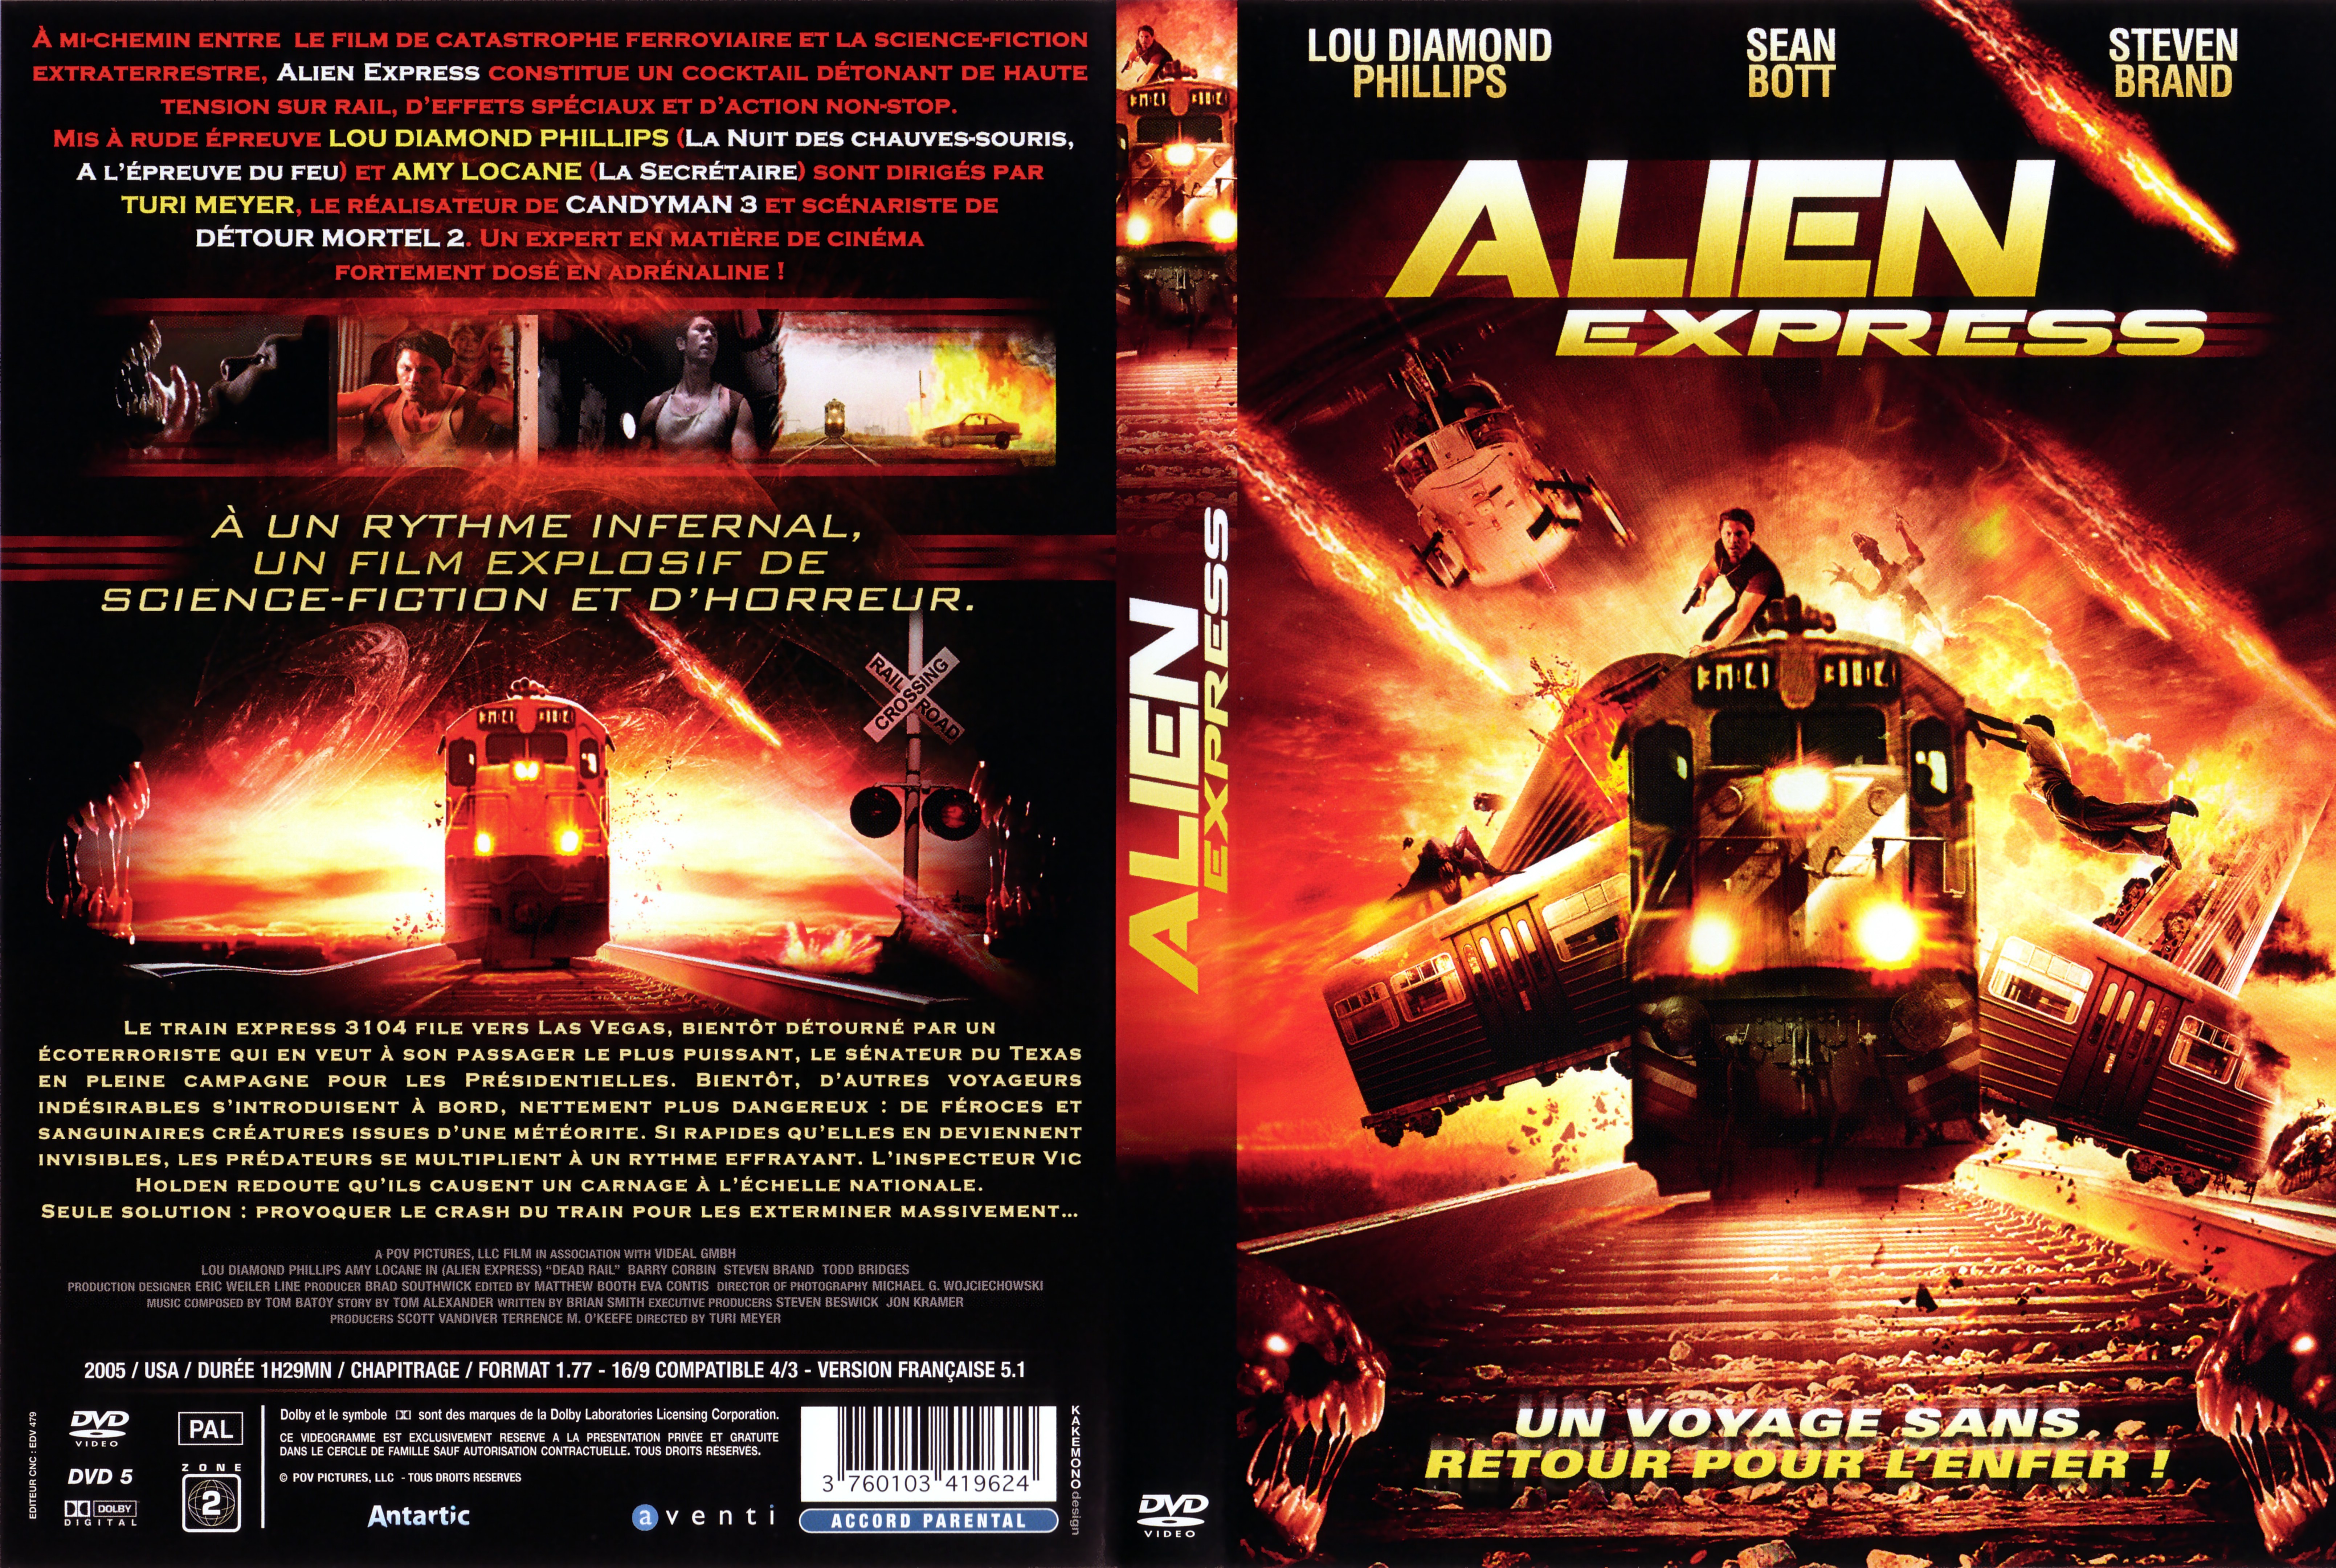 Jaquette DVD Alien express